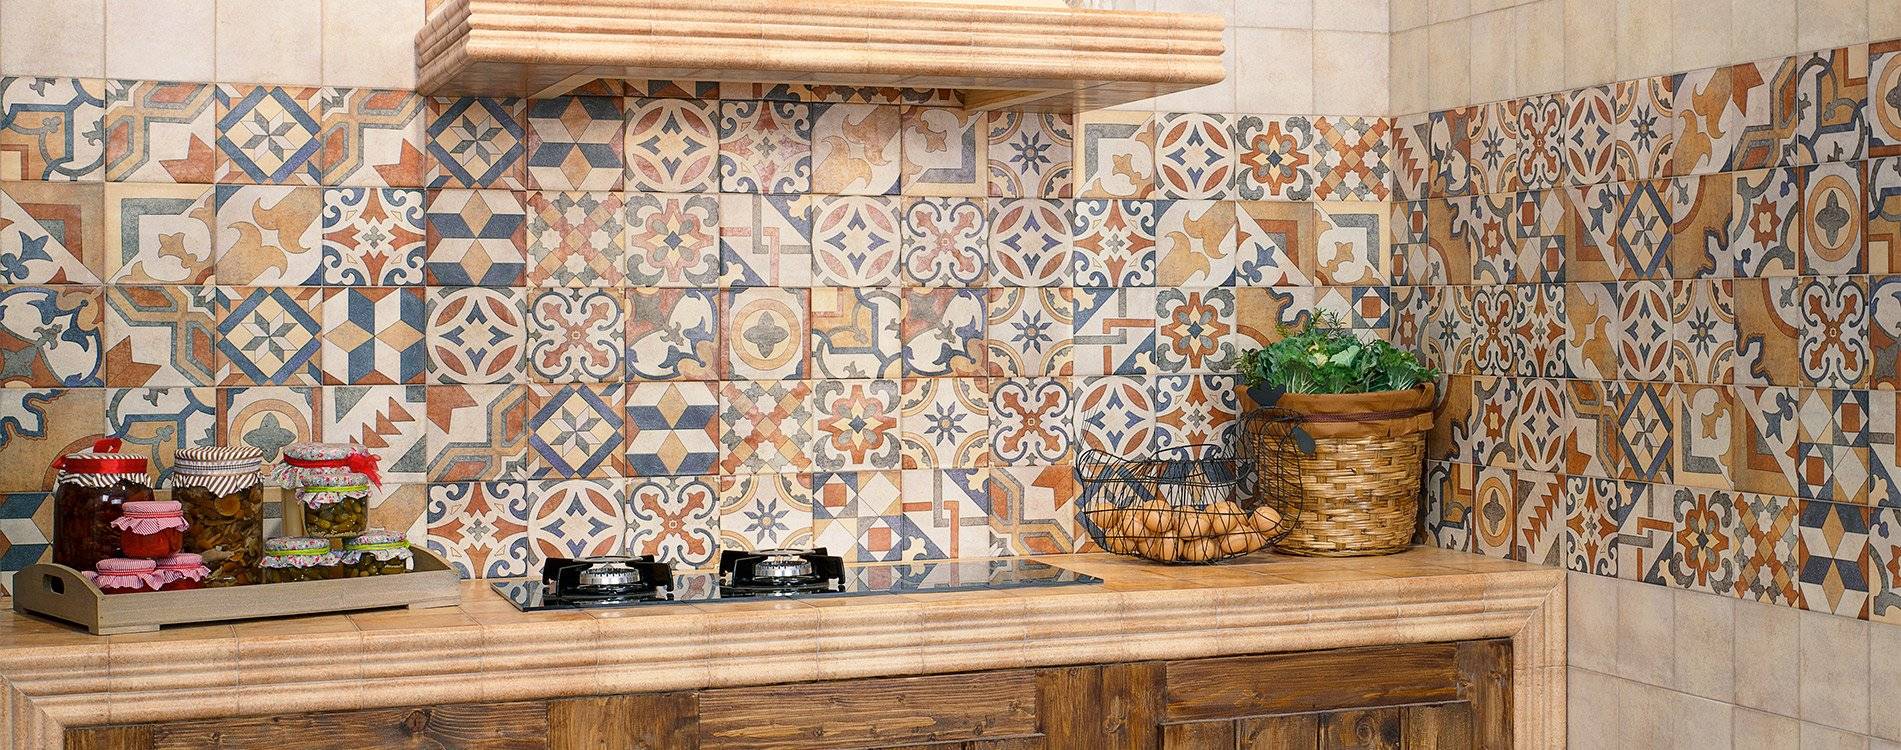 Итальянская плитка для кухни из керамики